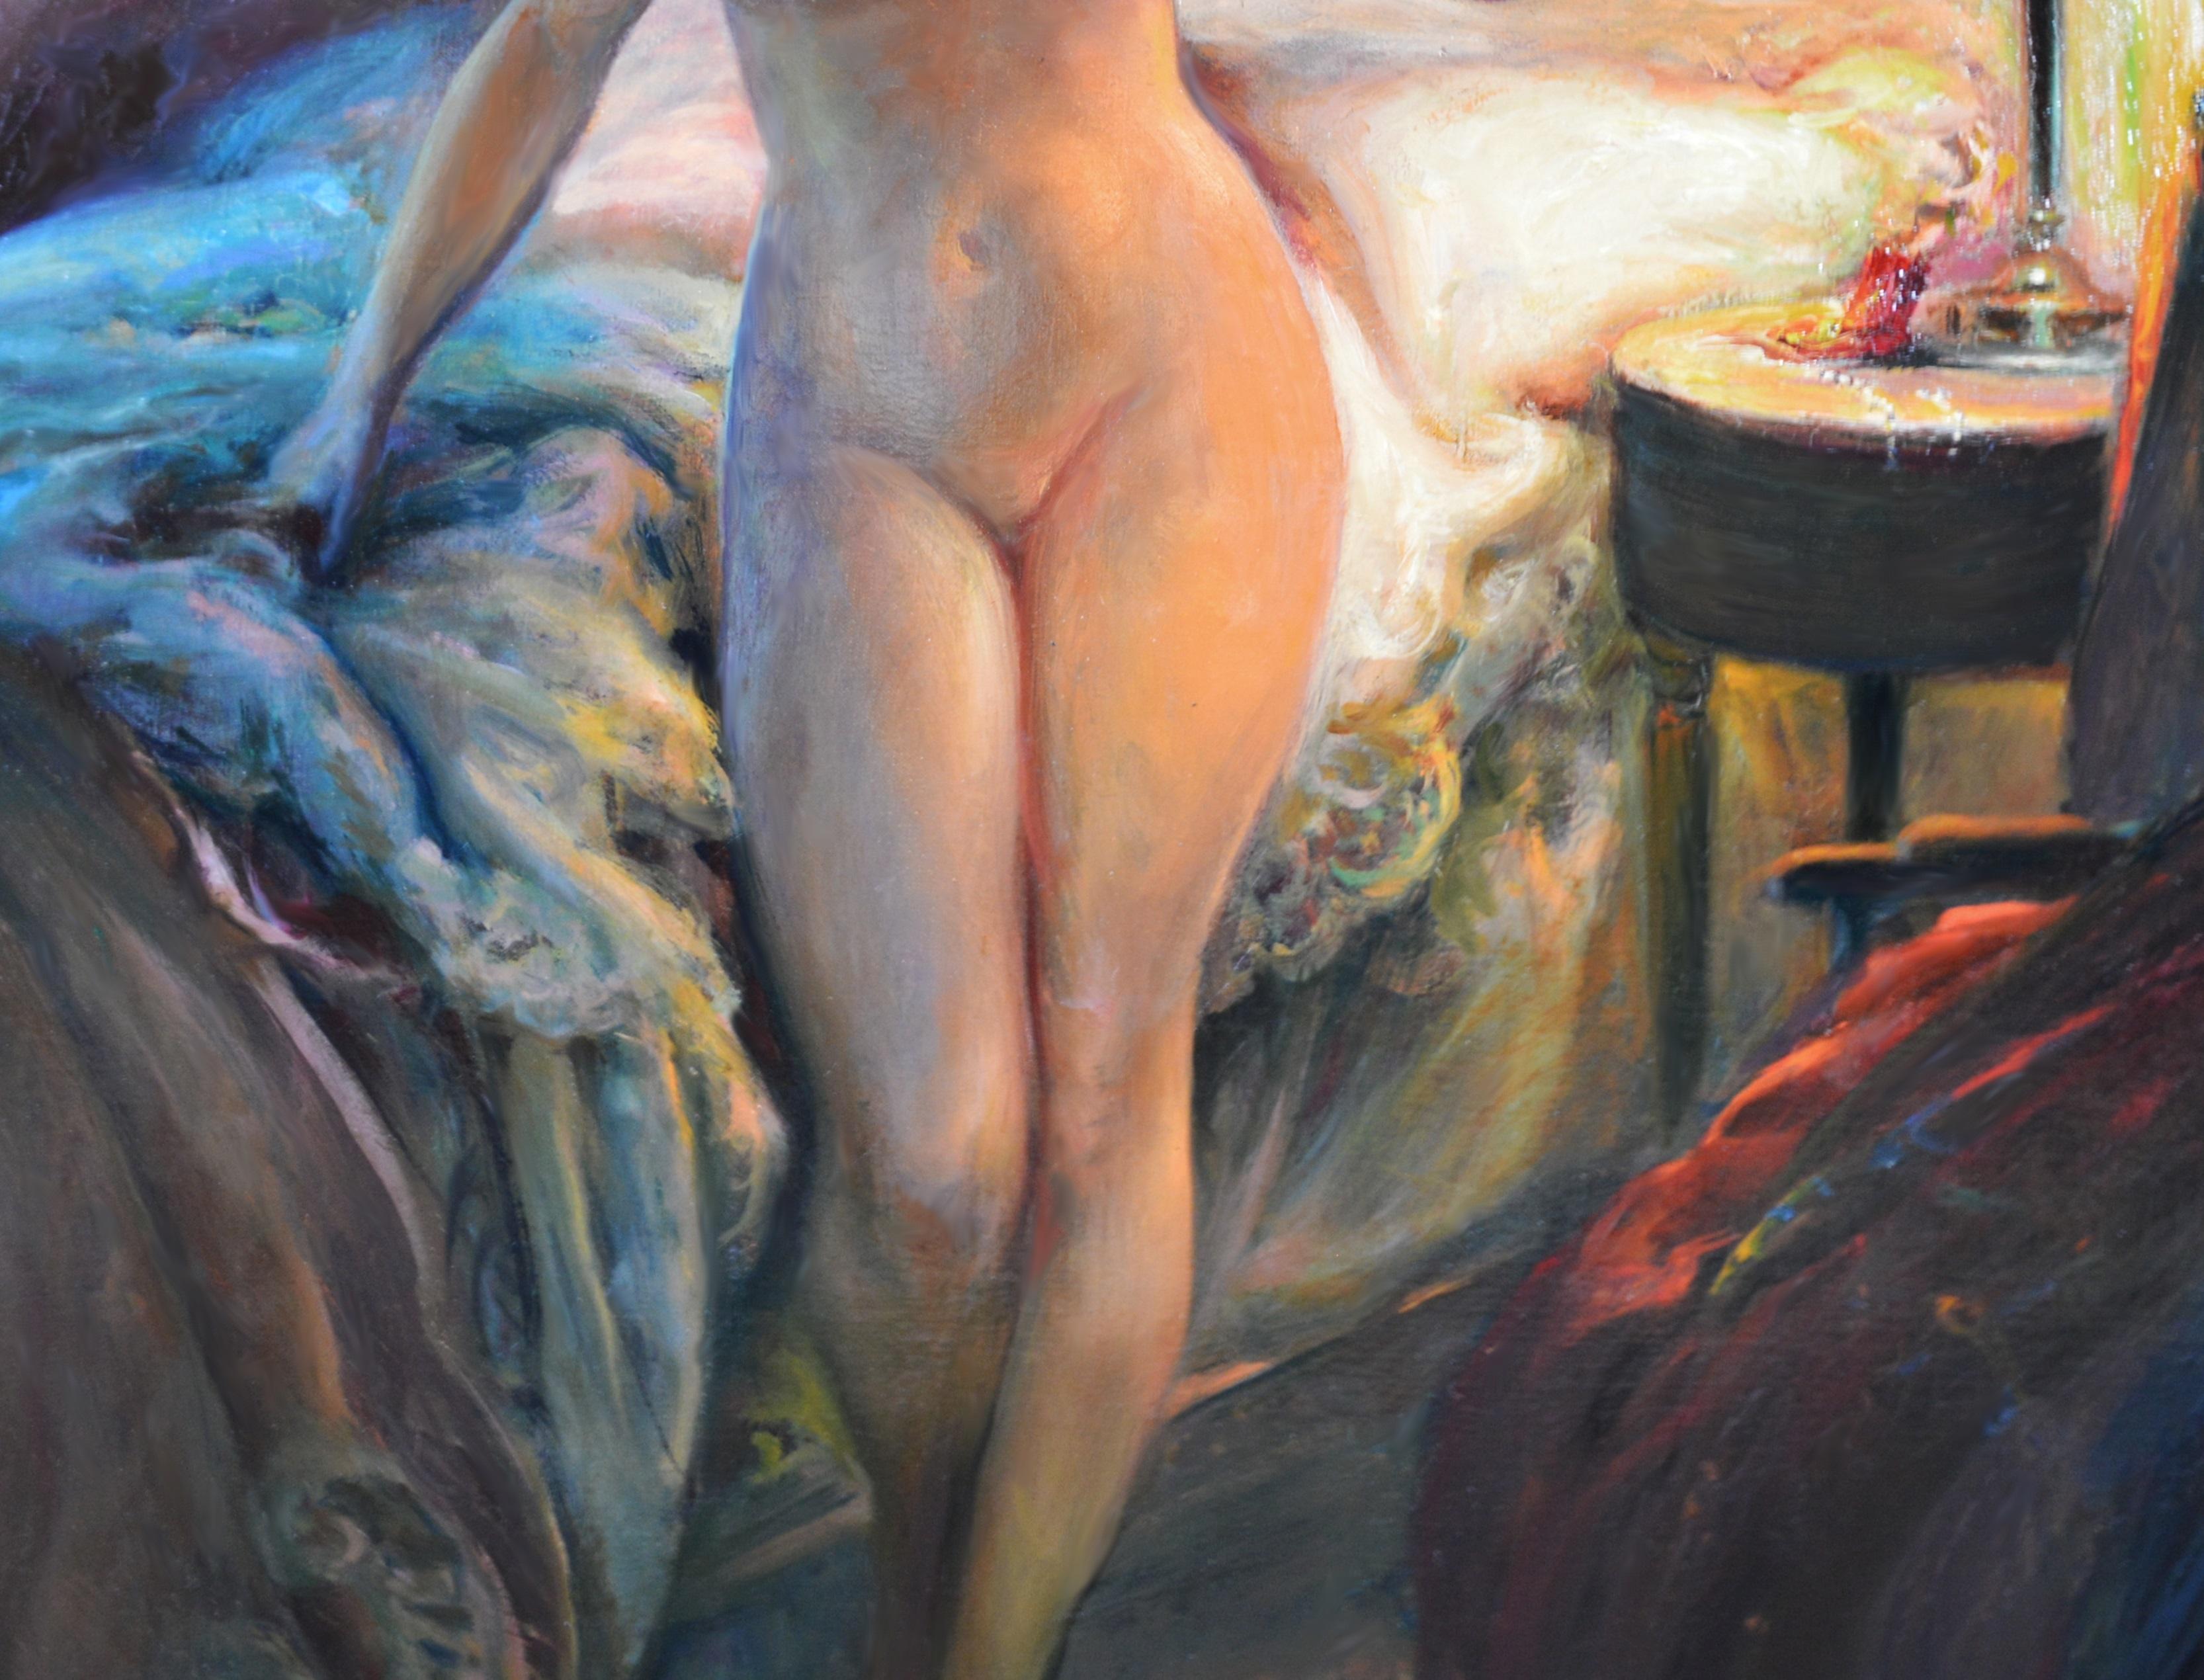 A l'Heure de se Coucher - Impressionist Portrait Oil Painting Nude by Lamplight 2